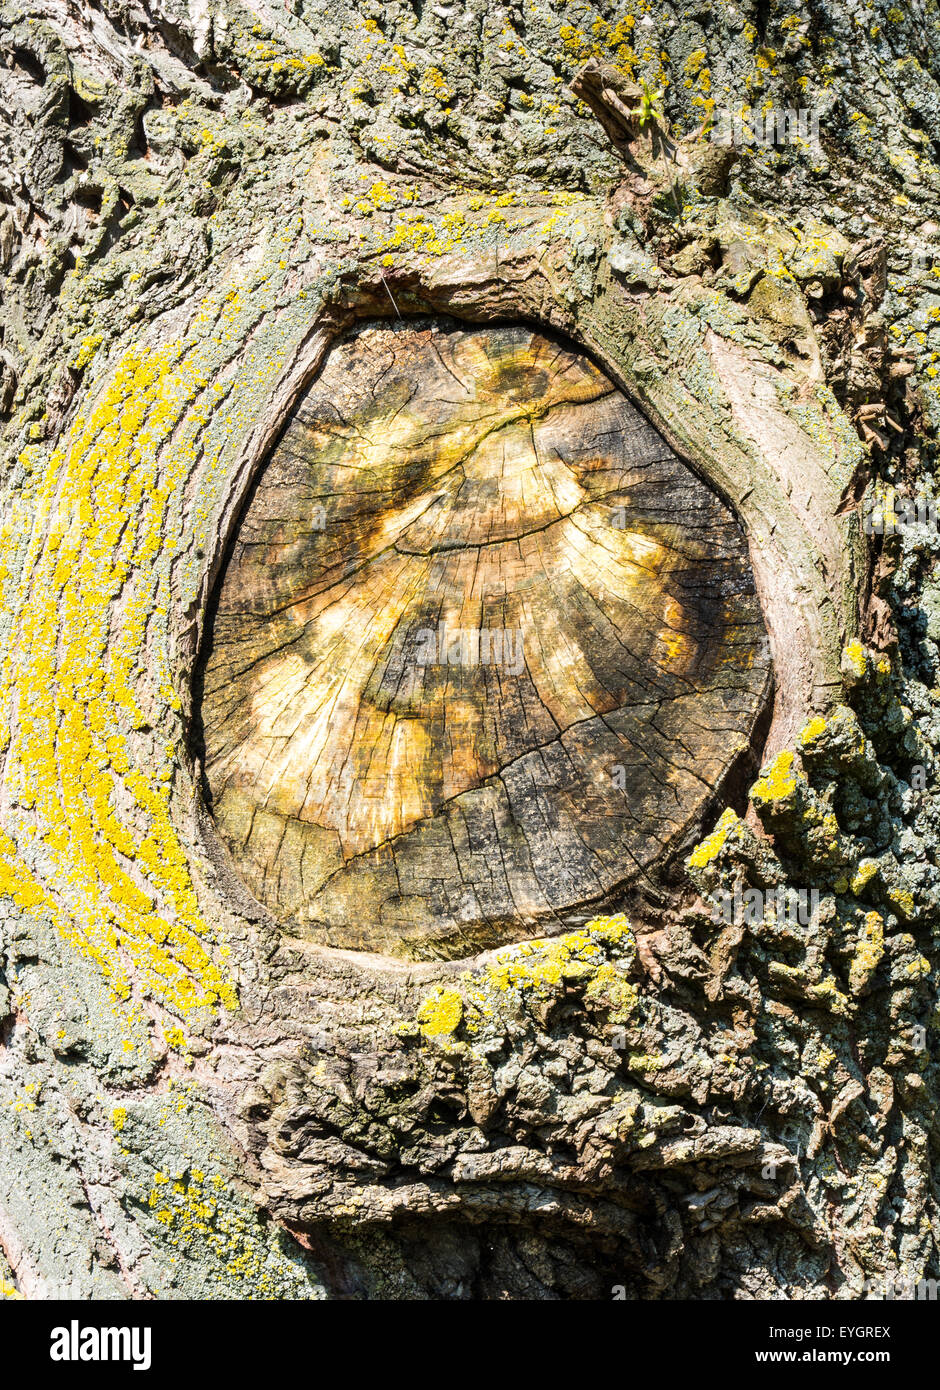 Detalle de una desgastada del tronco de un árbol con una rama cortada Foto de stock